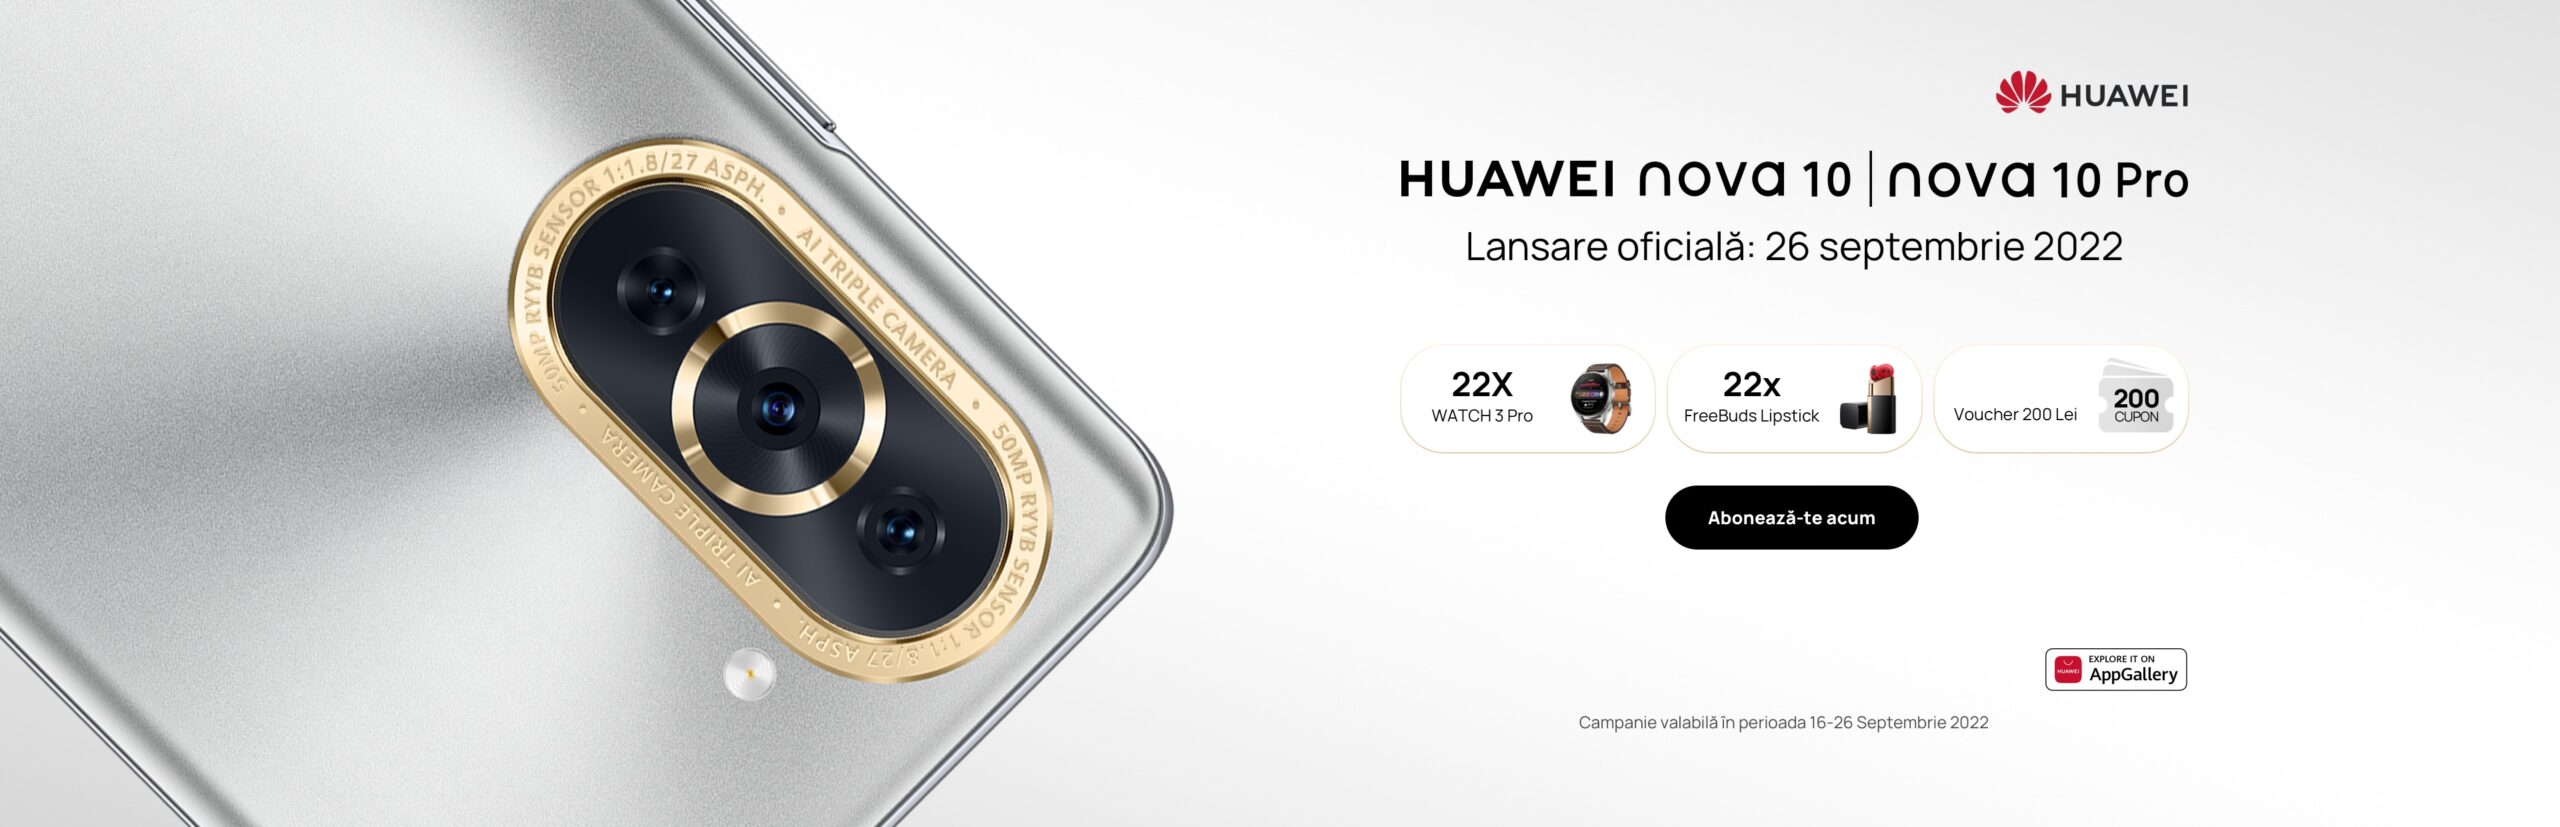 Huawei sărbătorește lansarea noilor smartphone-uri din seria nova cu premii surprinzătoare și reduceri avantajoase